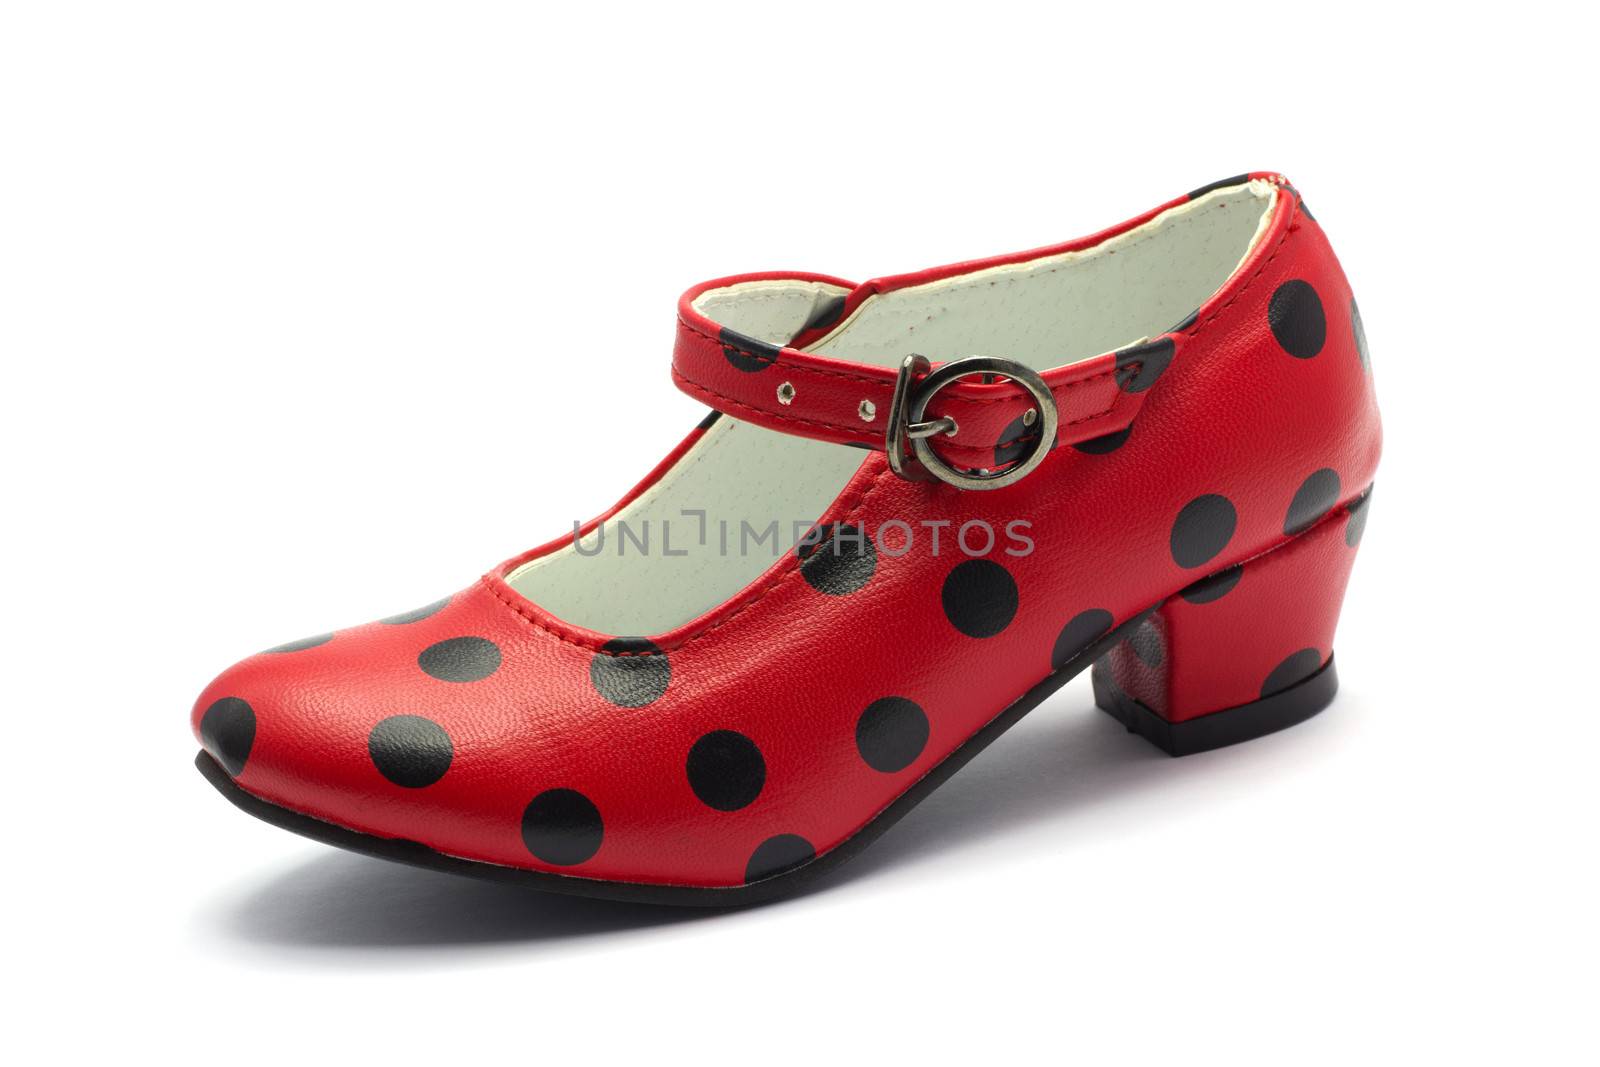 one Sevillian flamenco dancing shoe
Red shoe with black dots